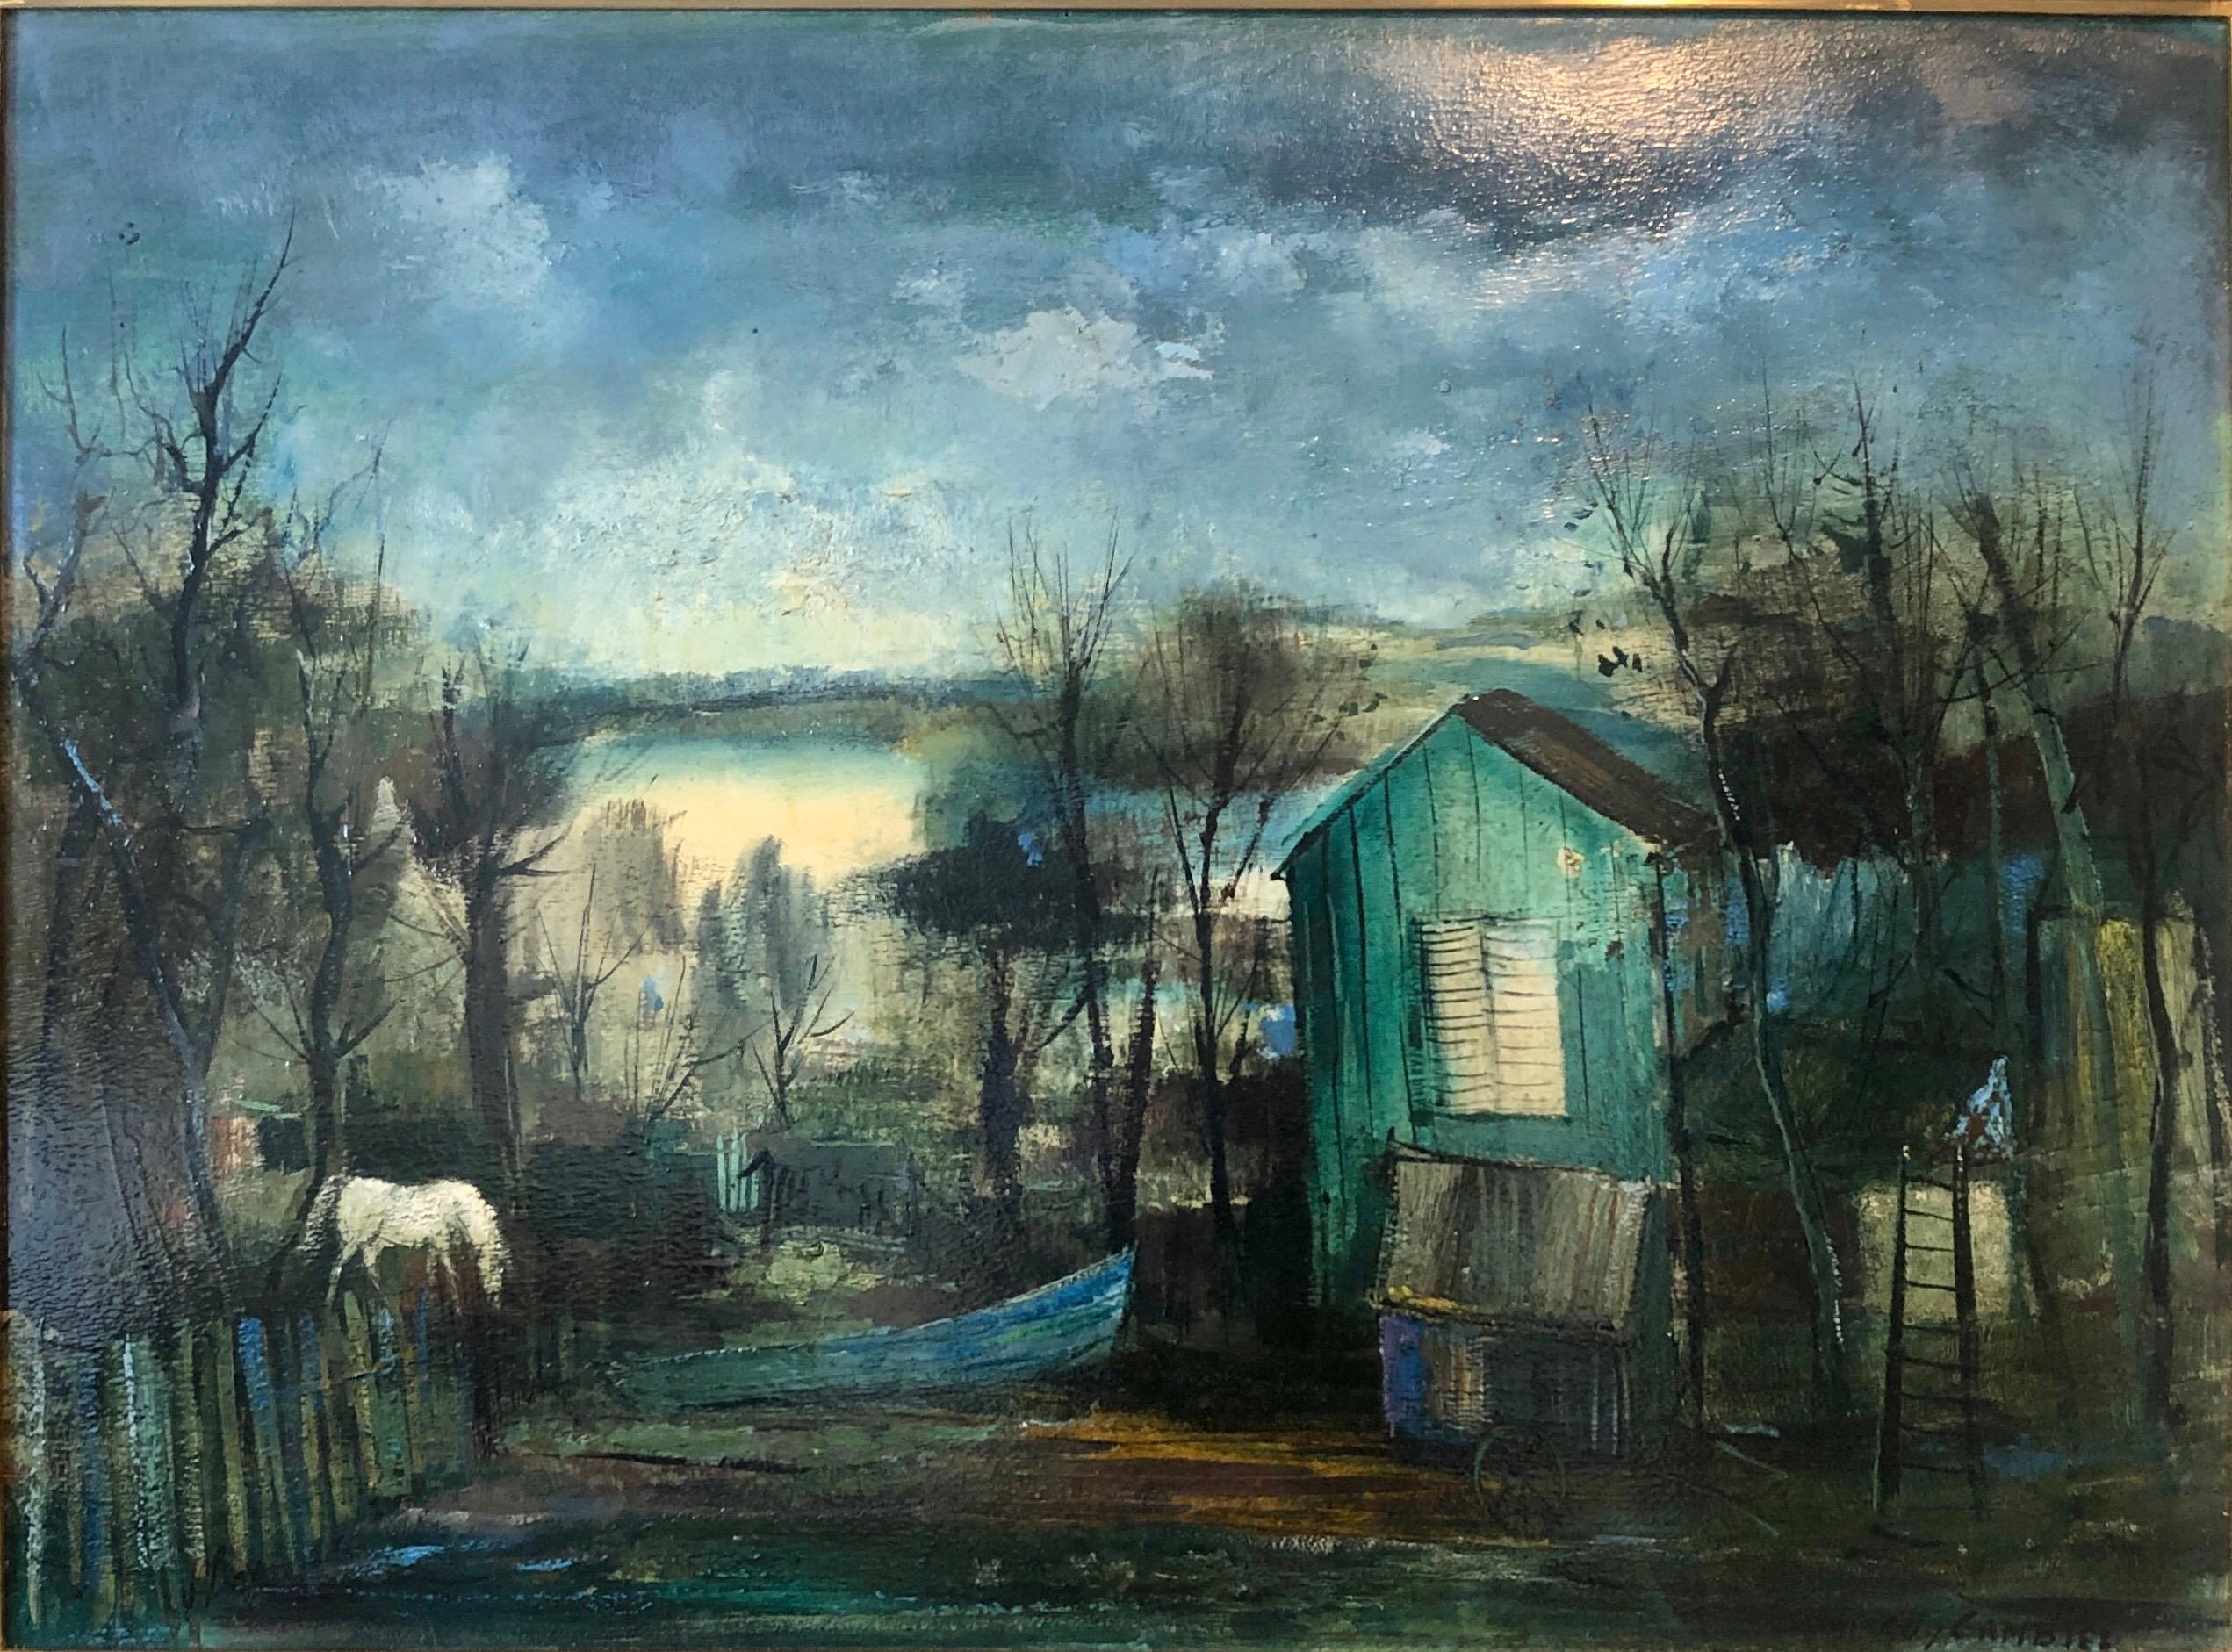 Peinture à l'huile de Barbizon, École de Paris, paysage nocturne, cheval - Painting de Guy Cambier